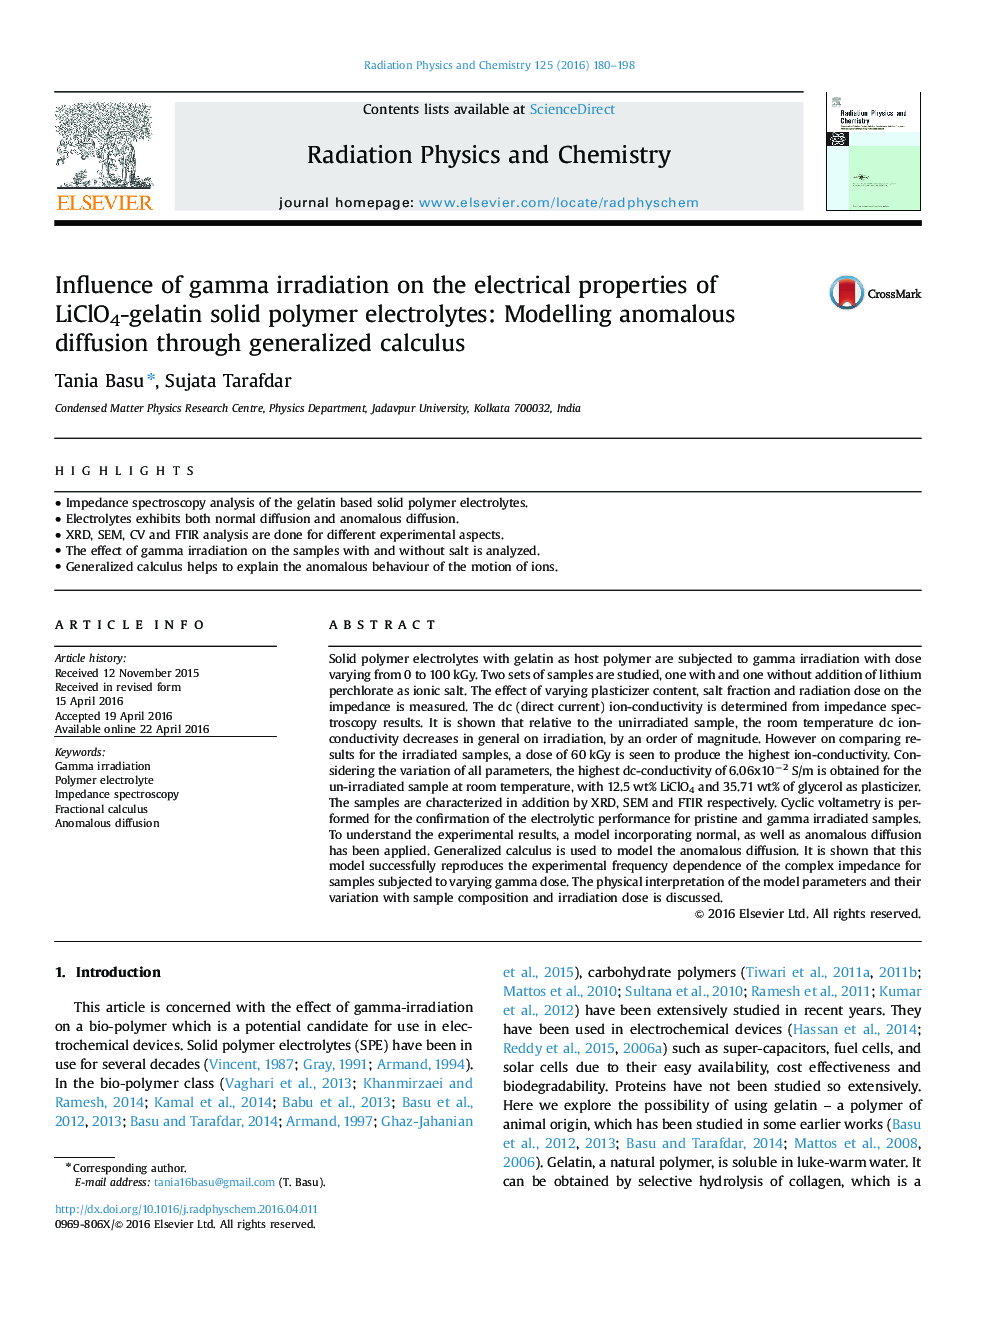 اثر تابش گاما بر خواص الکتریکی الکترولیتهای پلیمری جامد لیتیوم کلسیم ژلاتین: مدل سازی انتشار بی نظیر از طریق محاسبات عمومی 